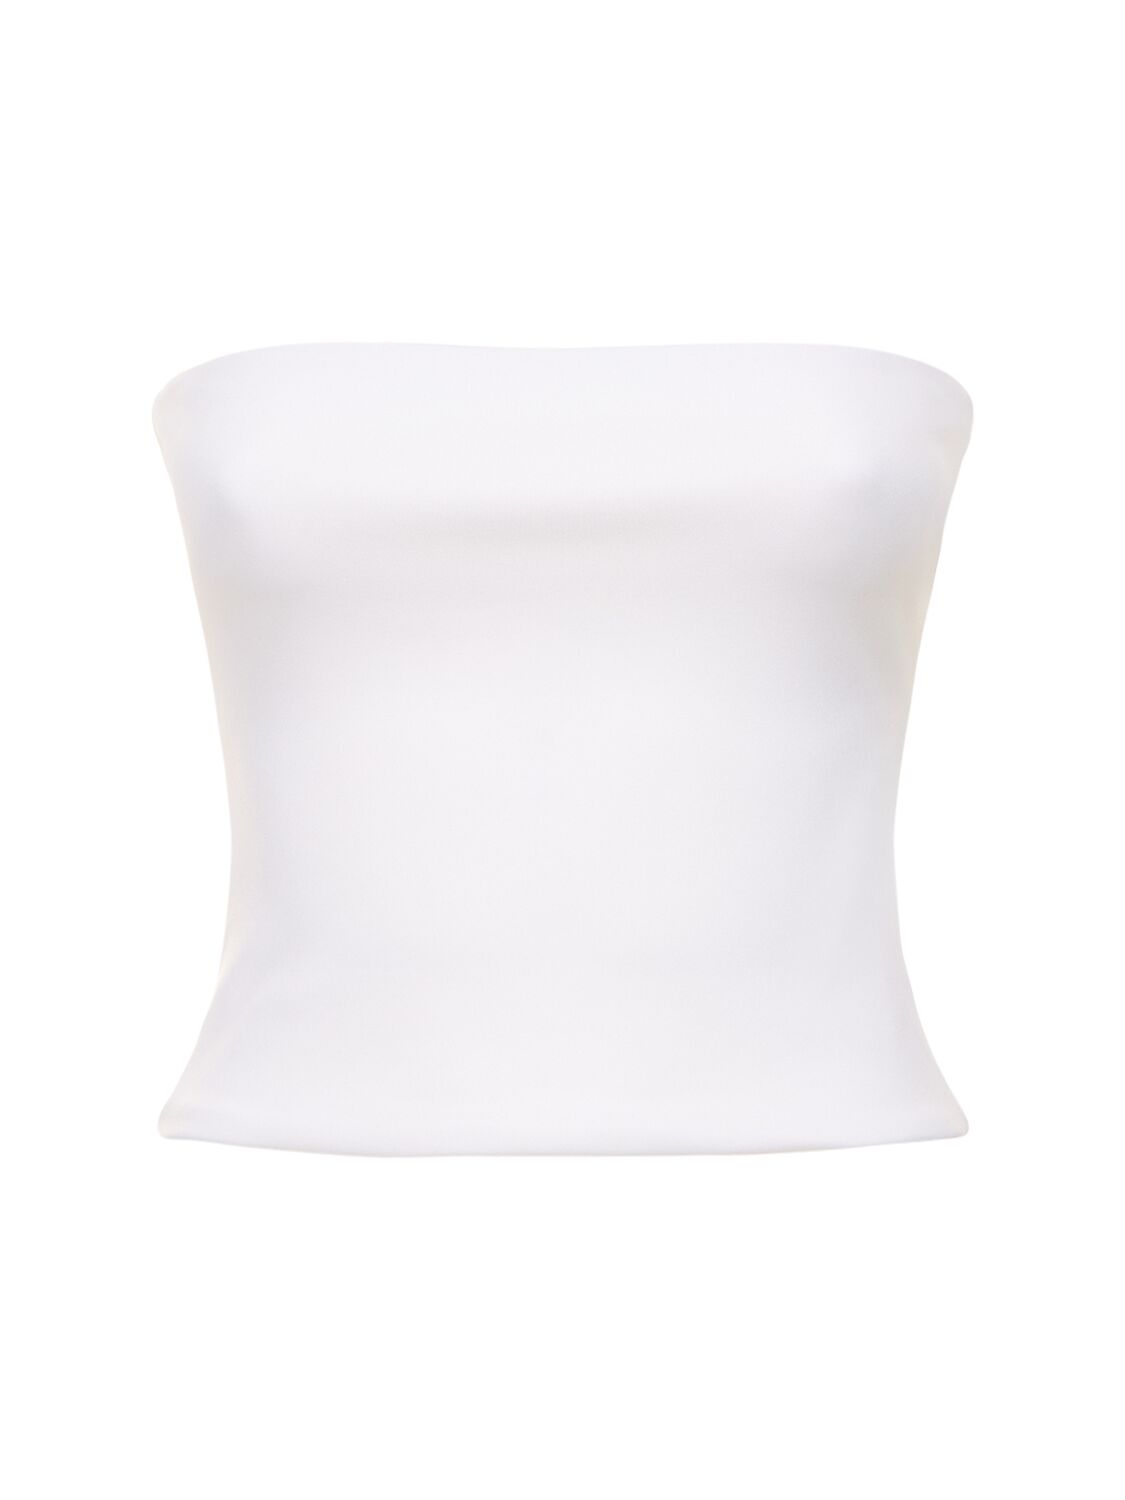 Wardrobe.nyc White Opaque Tube Top